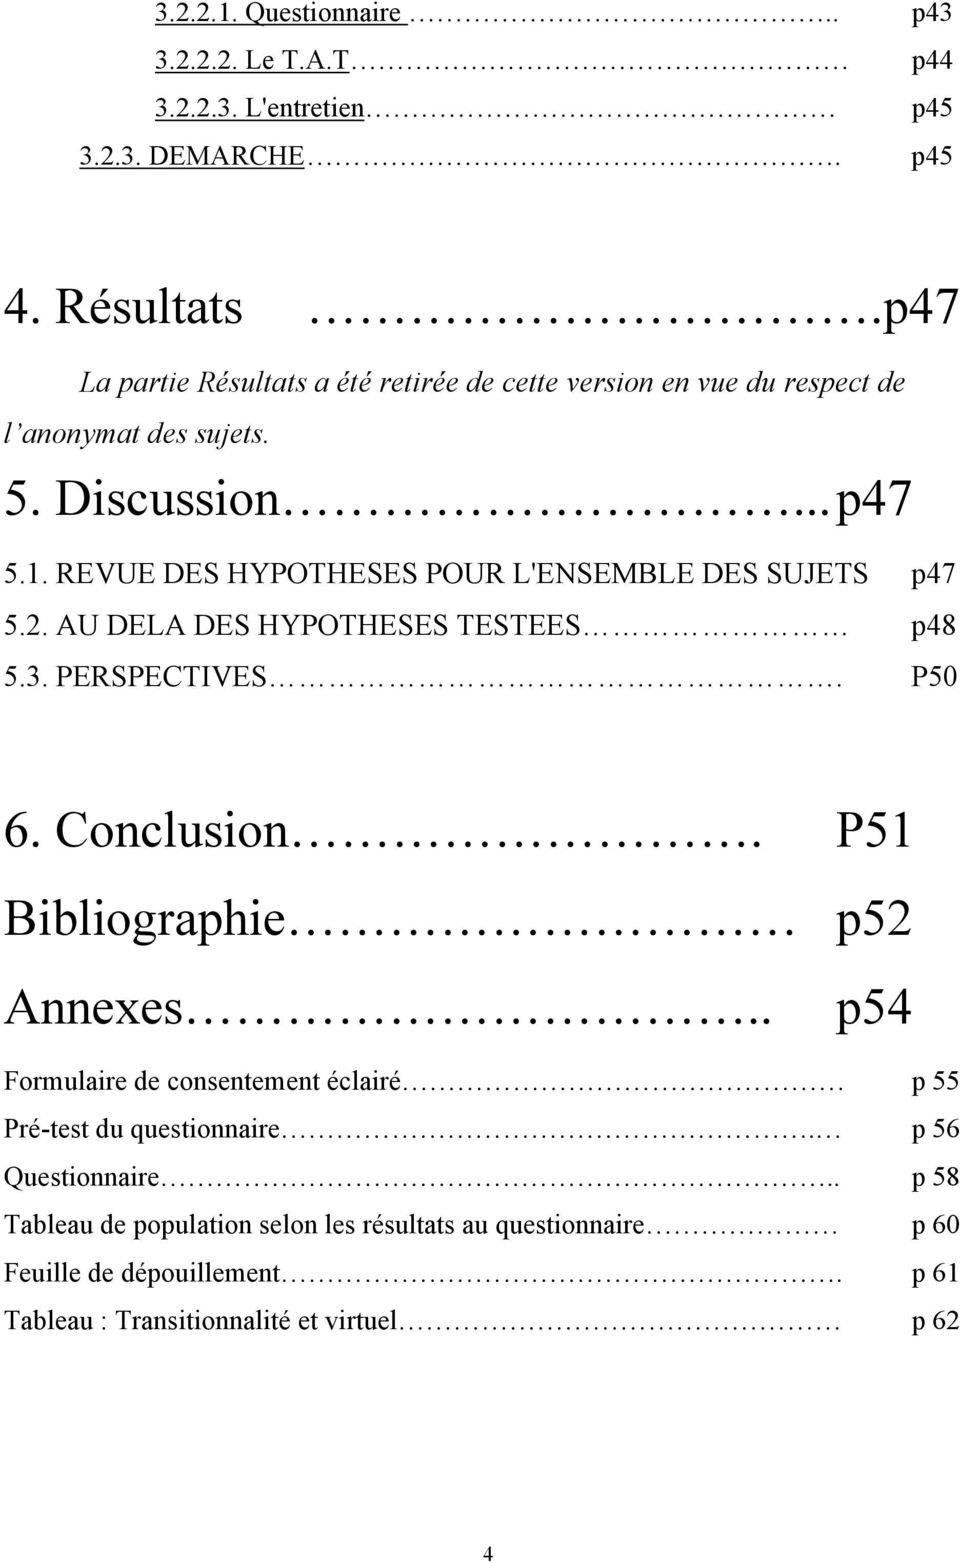 REVUE DES HYPOTHESES POUR L'ENSEMBLE DES SUJETS p47 5.2. AU DELA DES HYPOTHESES TESTEES p48 5.3. PERSPECTIVES. P50 6. Conclusion.